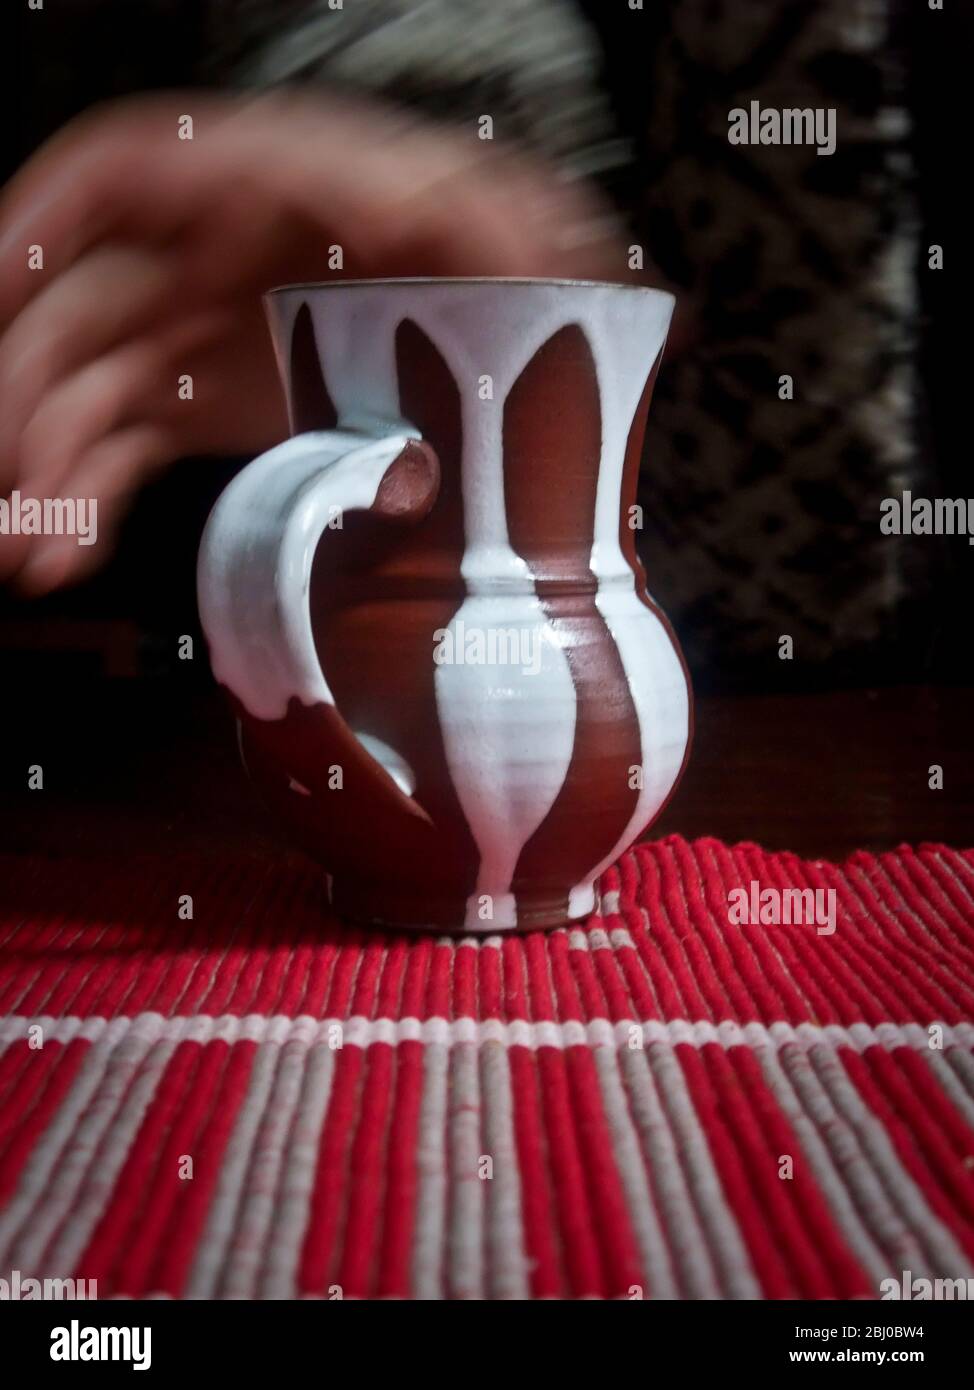 Prendre une tasse de café ou de thé dans un mug en poterie stripey sur une nappe rayée - Banque D'Images